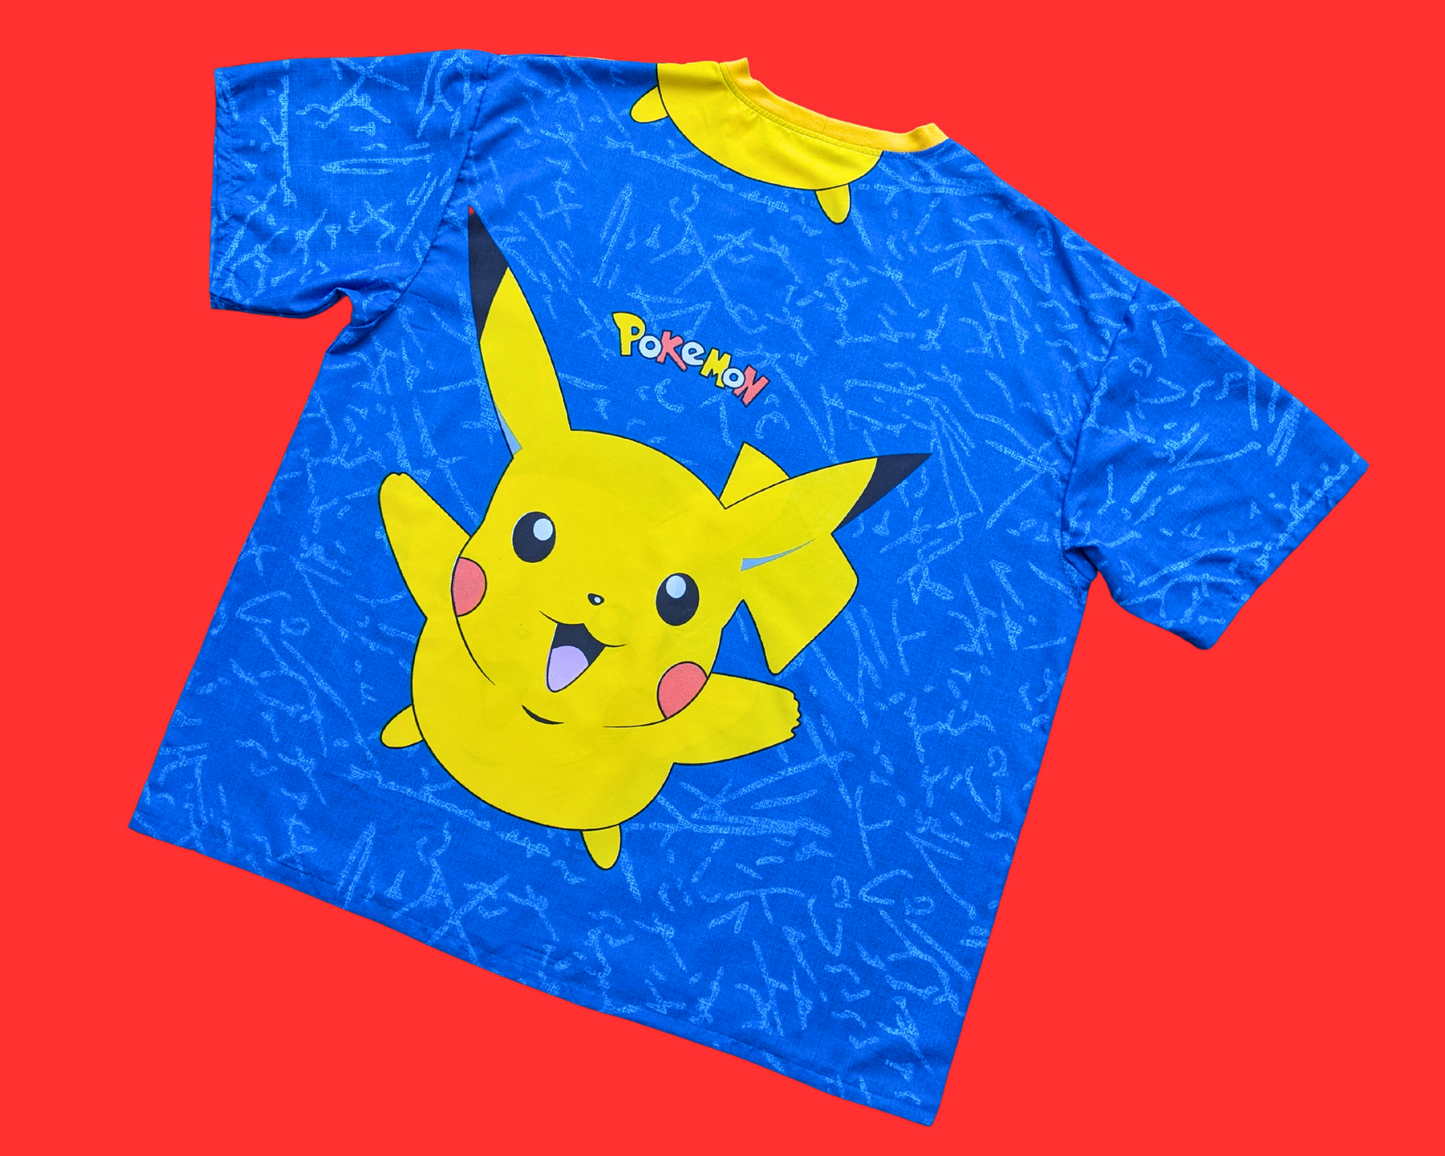 Handmade, Upcycled Blue Pokemon, Pikachu Bedsheet T-Shirt Oversized XL